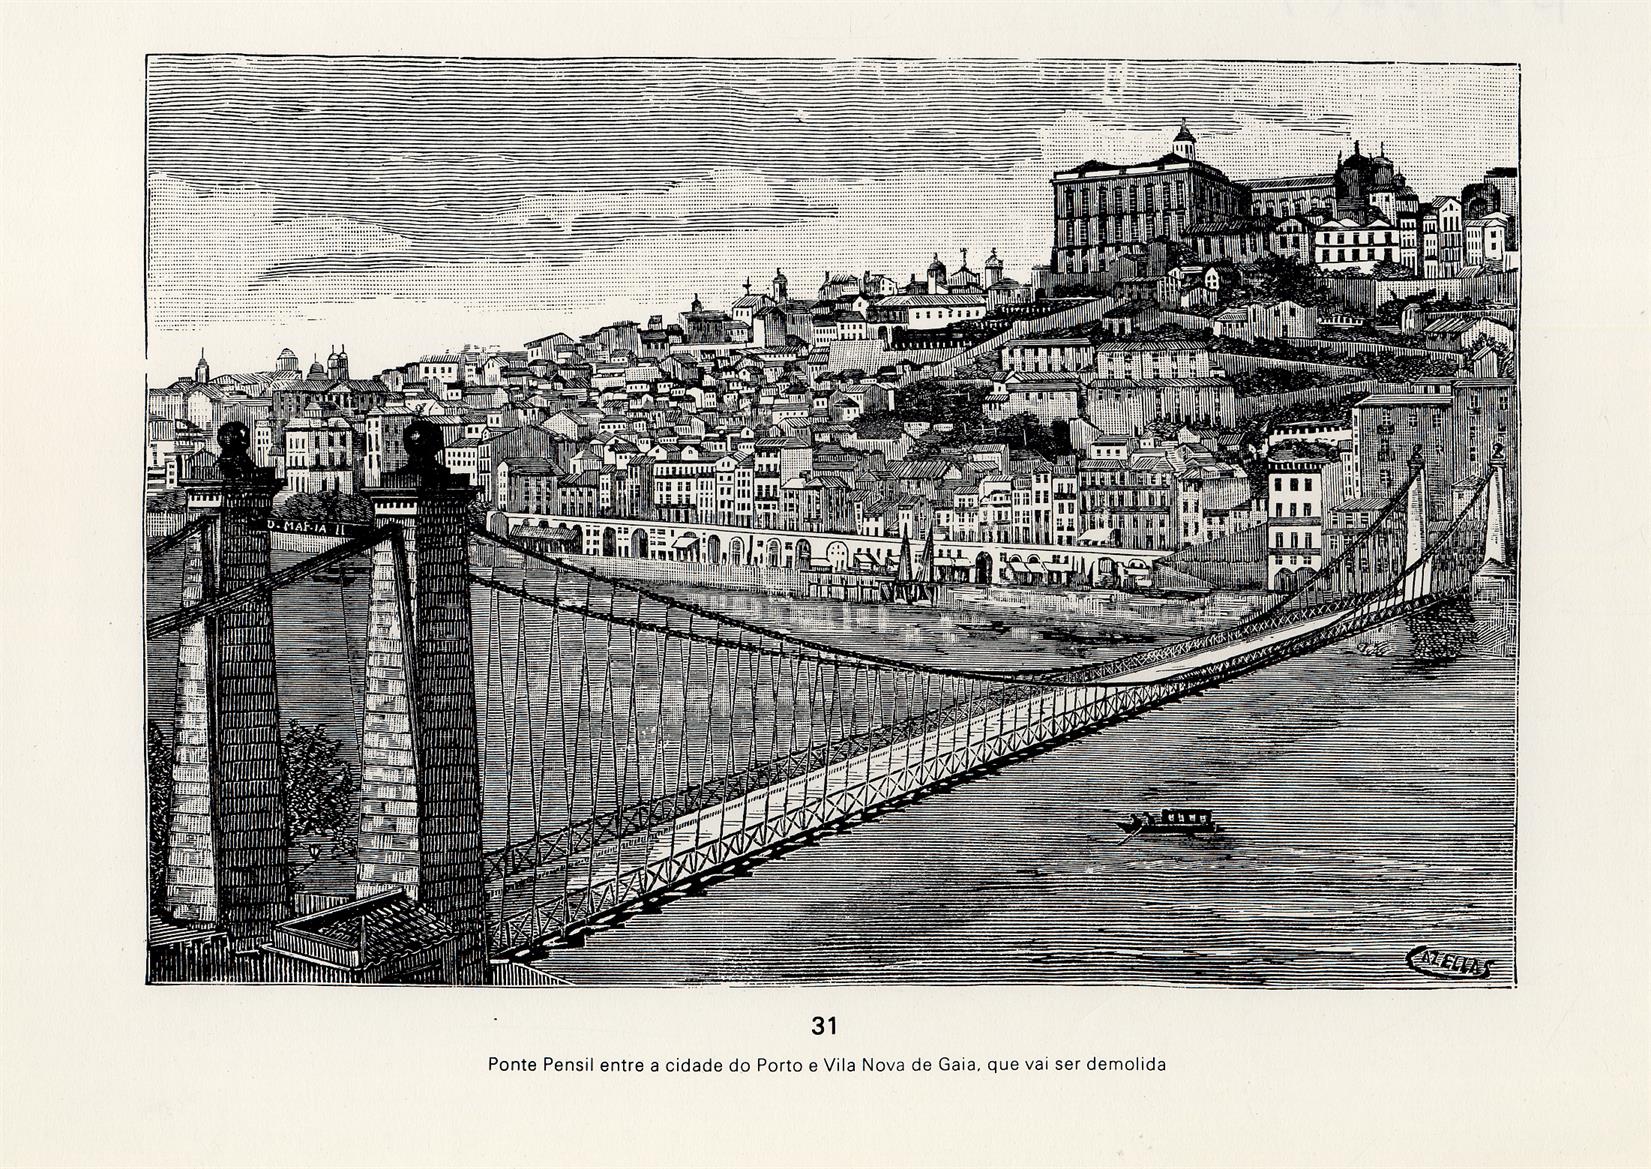 Ponte pênsil entre a cidade do Porto e Vila Nova de Gaia, que vai ser demolida